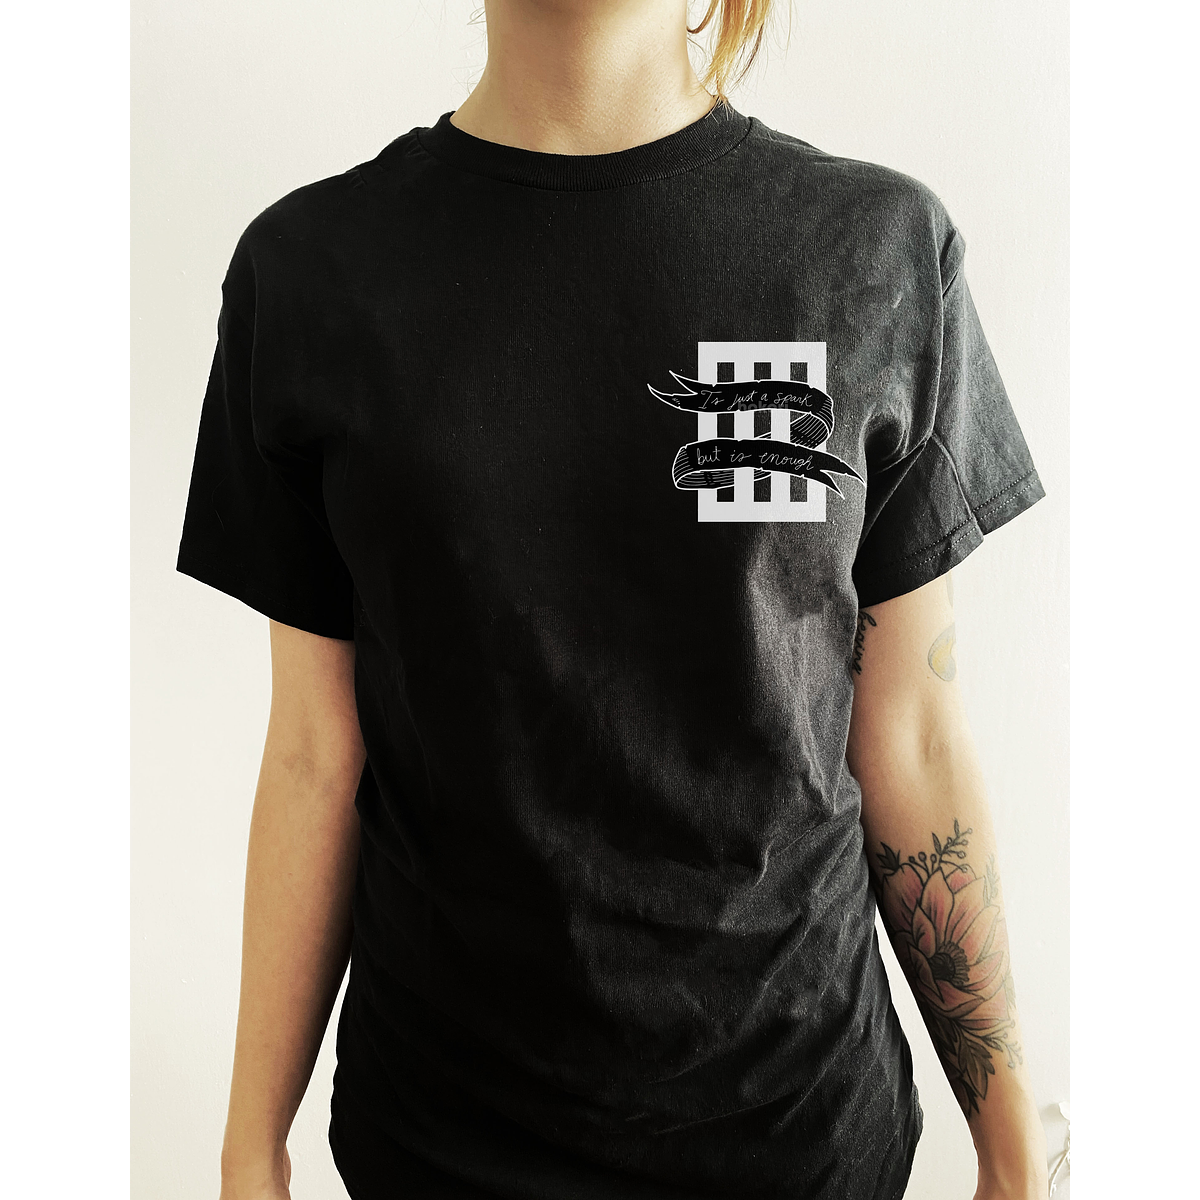 Paramore - Last hope T-shirt (Black)